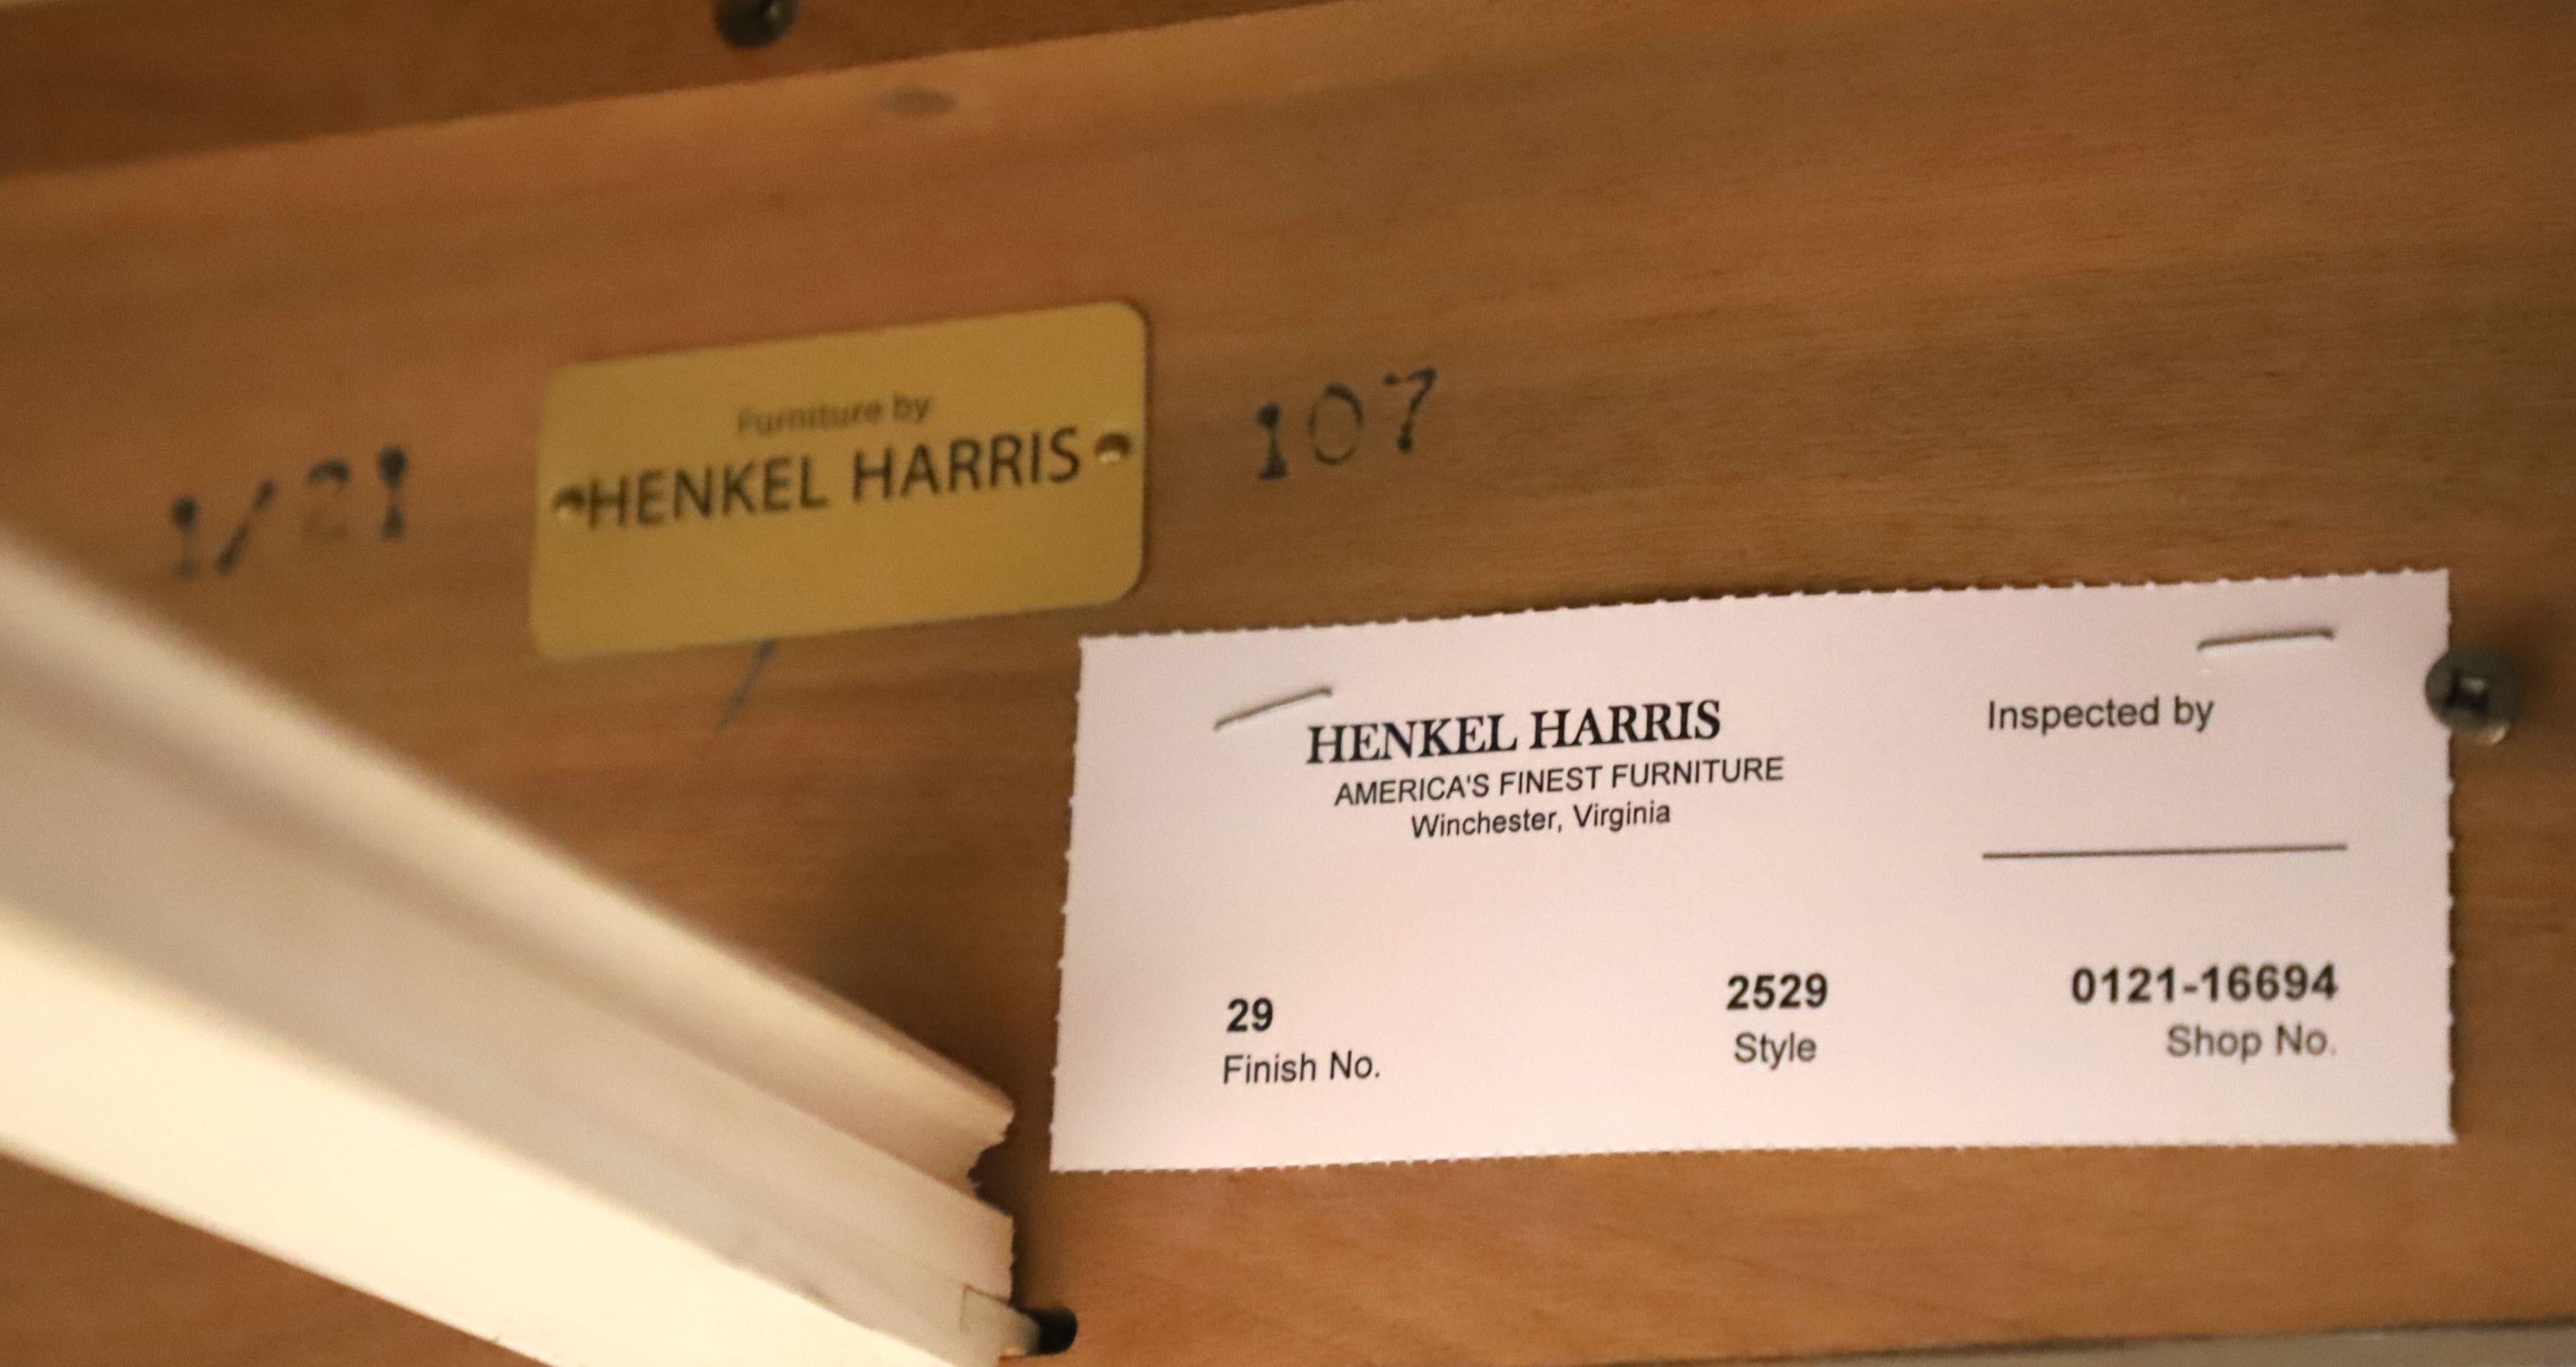 HENKEL HARRIS Hepplewhite Inlaid Mahogany Silver Chest 2529 Finish 29 9